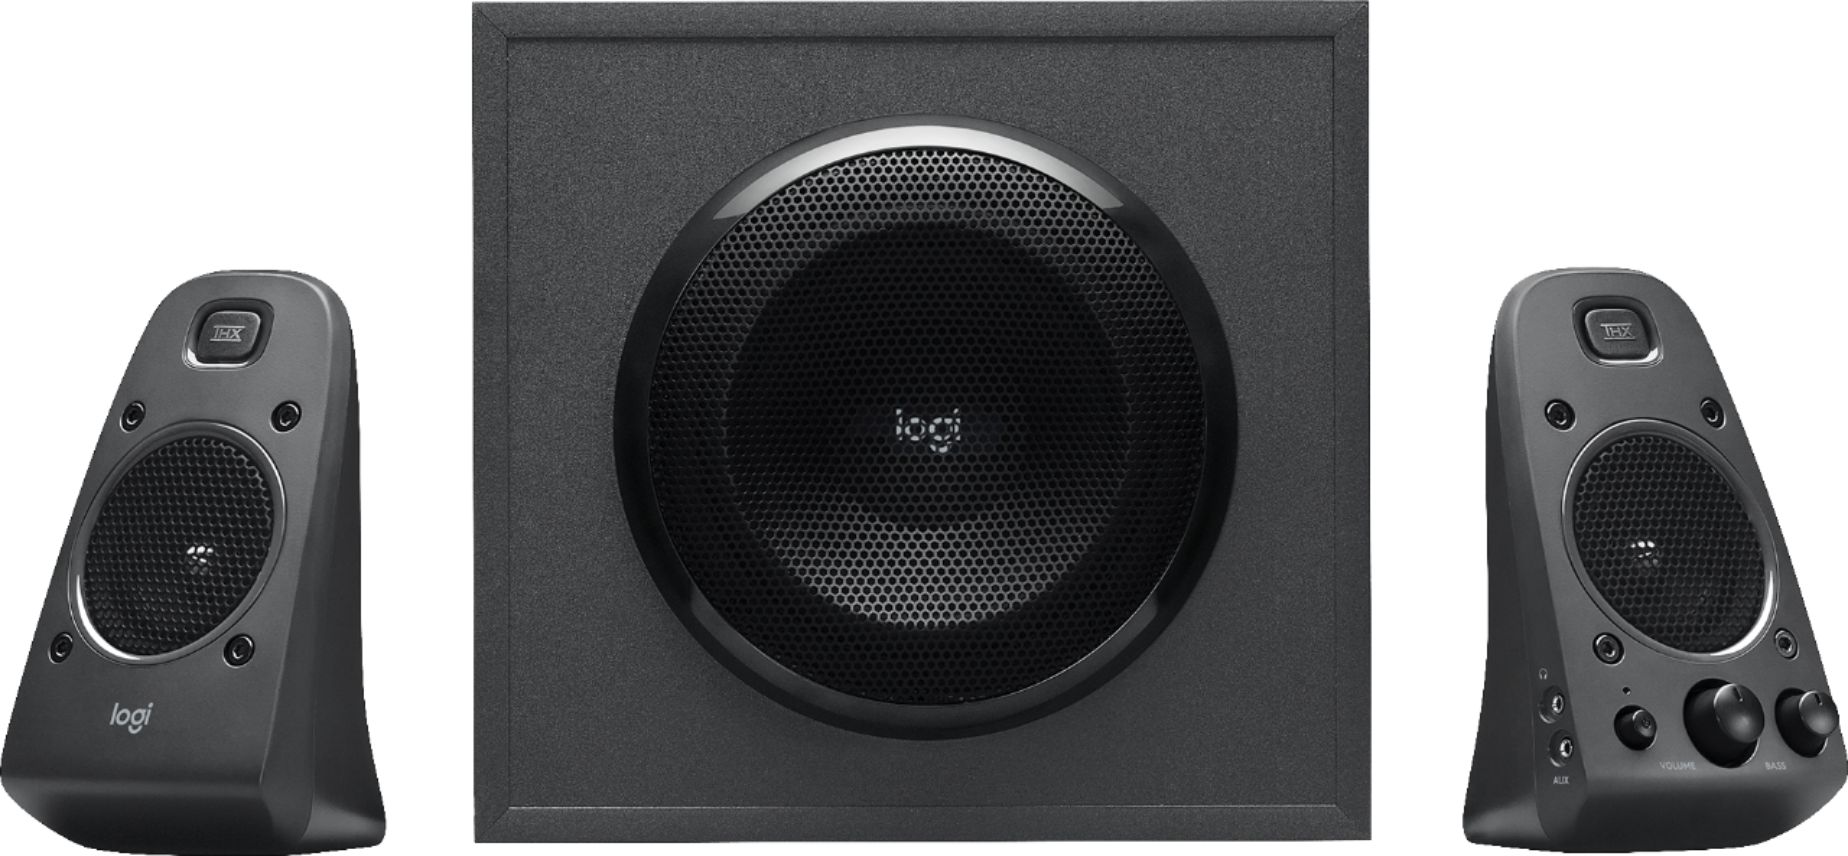 logitech computer speakers best buy